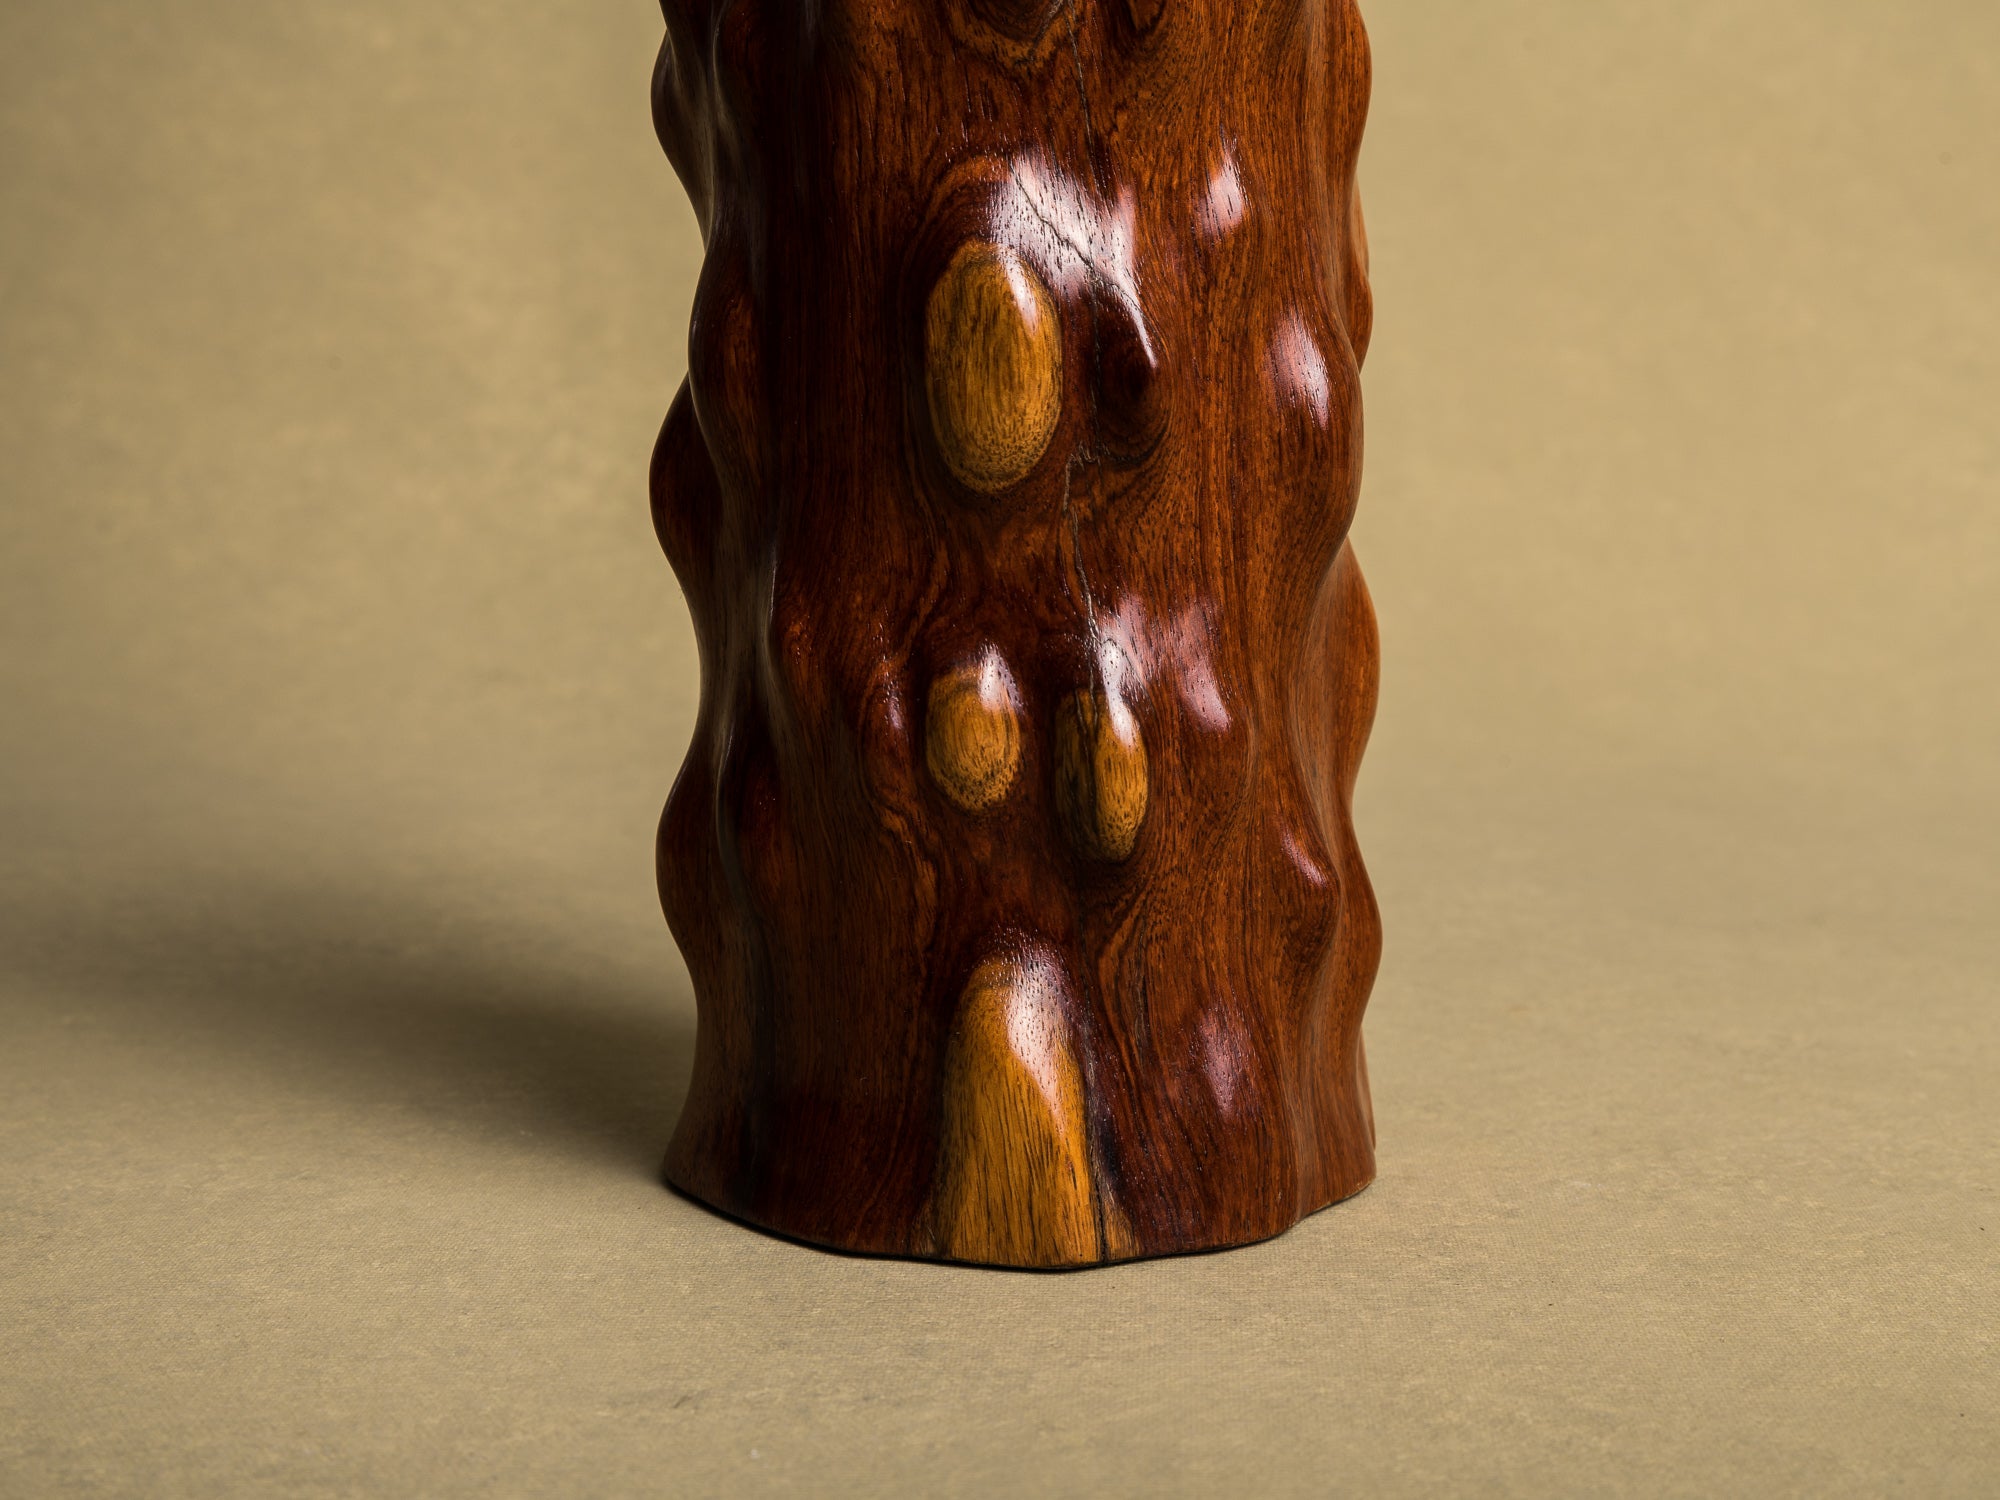 Vase pour l'ikebana en bois pour la cérémonie du thé, Japon (Ère Shōwa)..Wooden flower vase for ikebana and tea ceremony, Japan (Shōwa era)